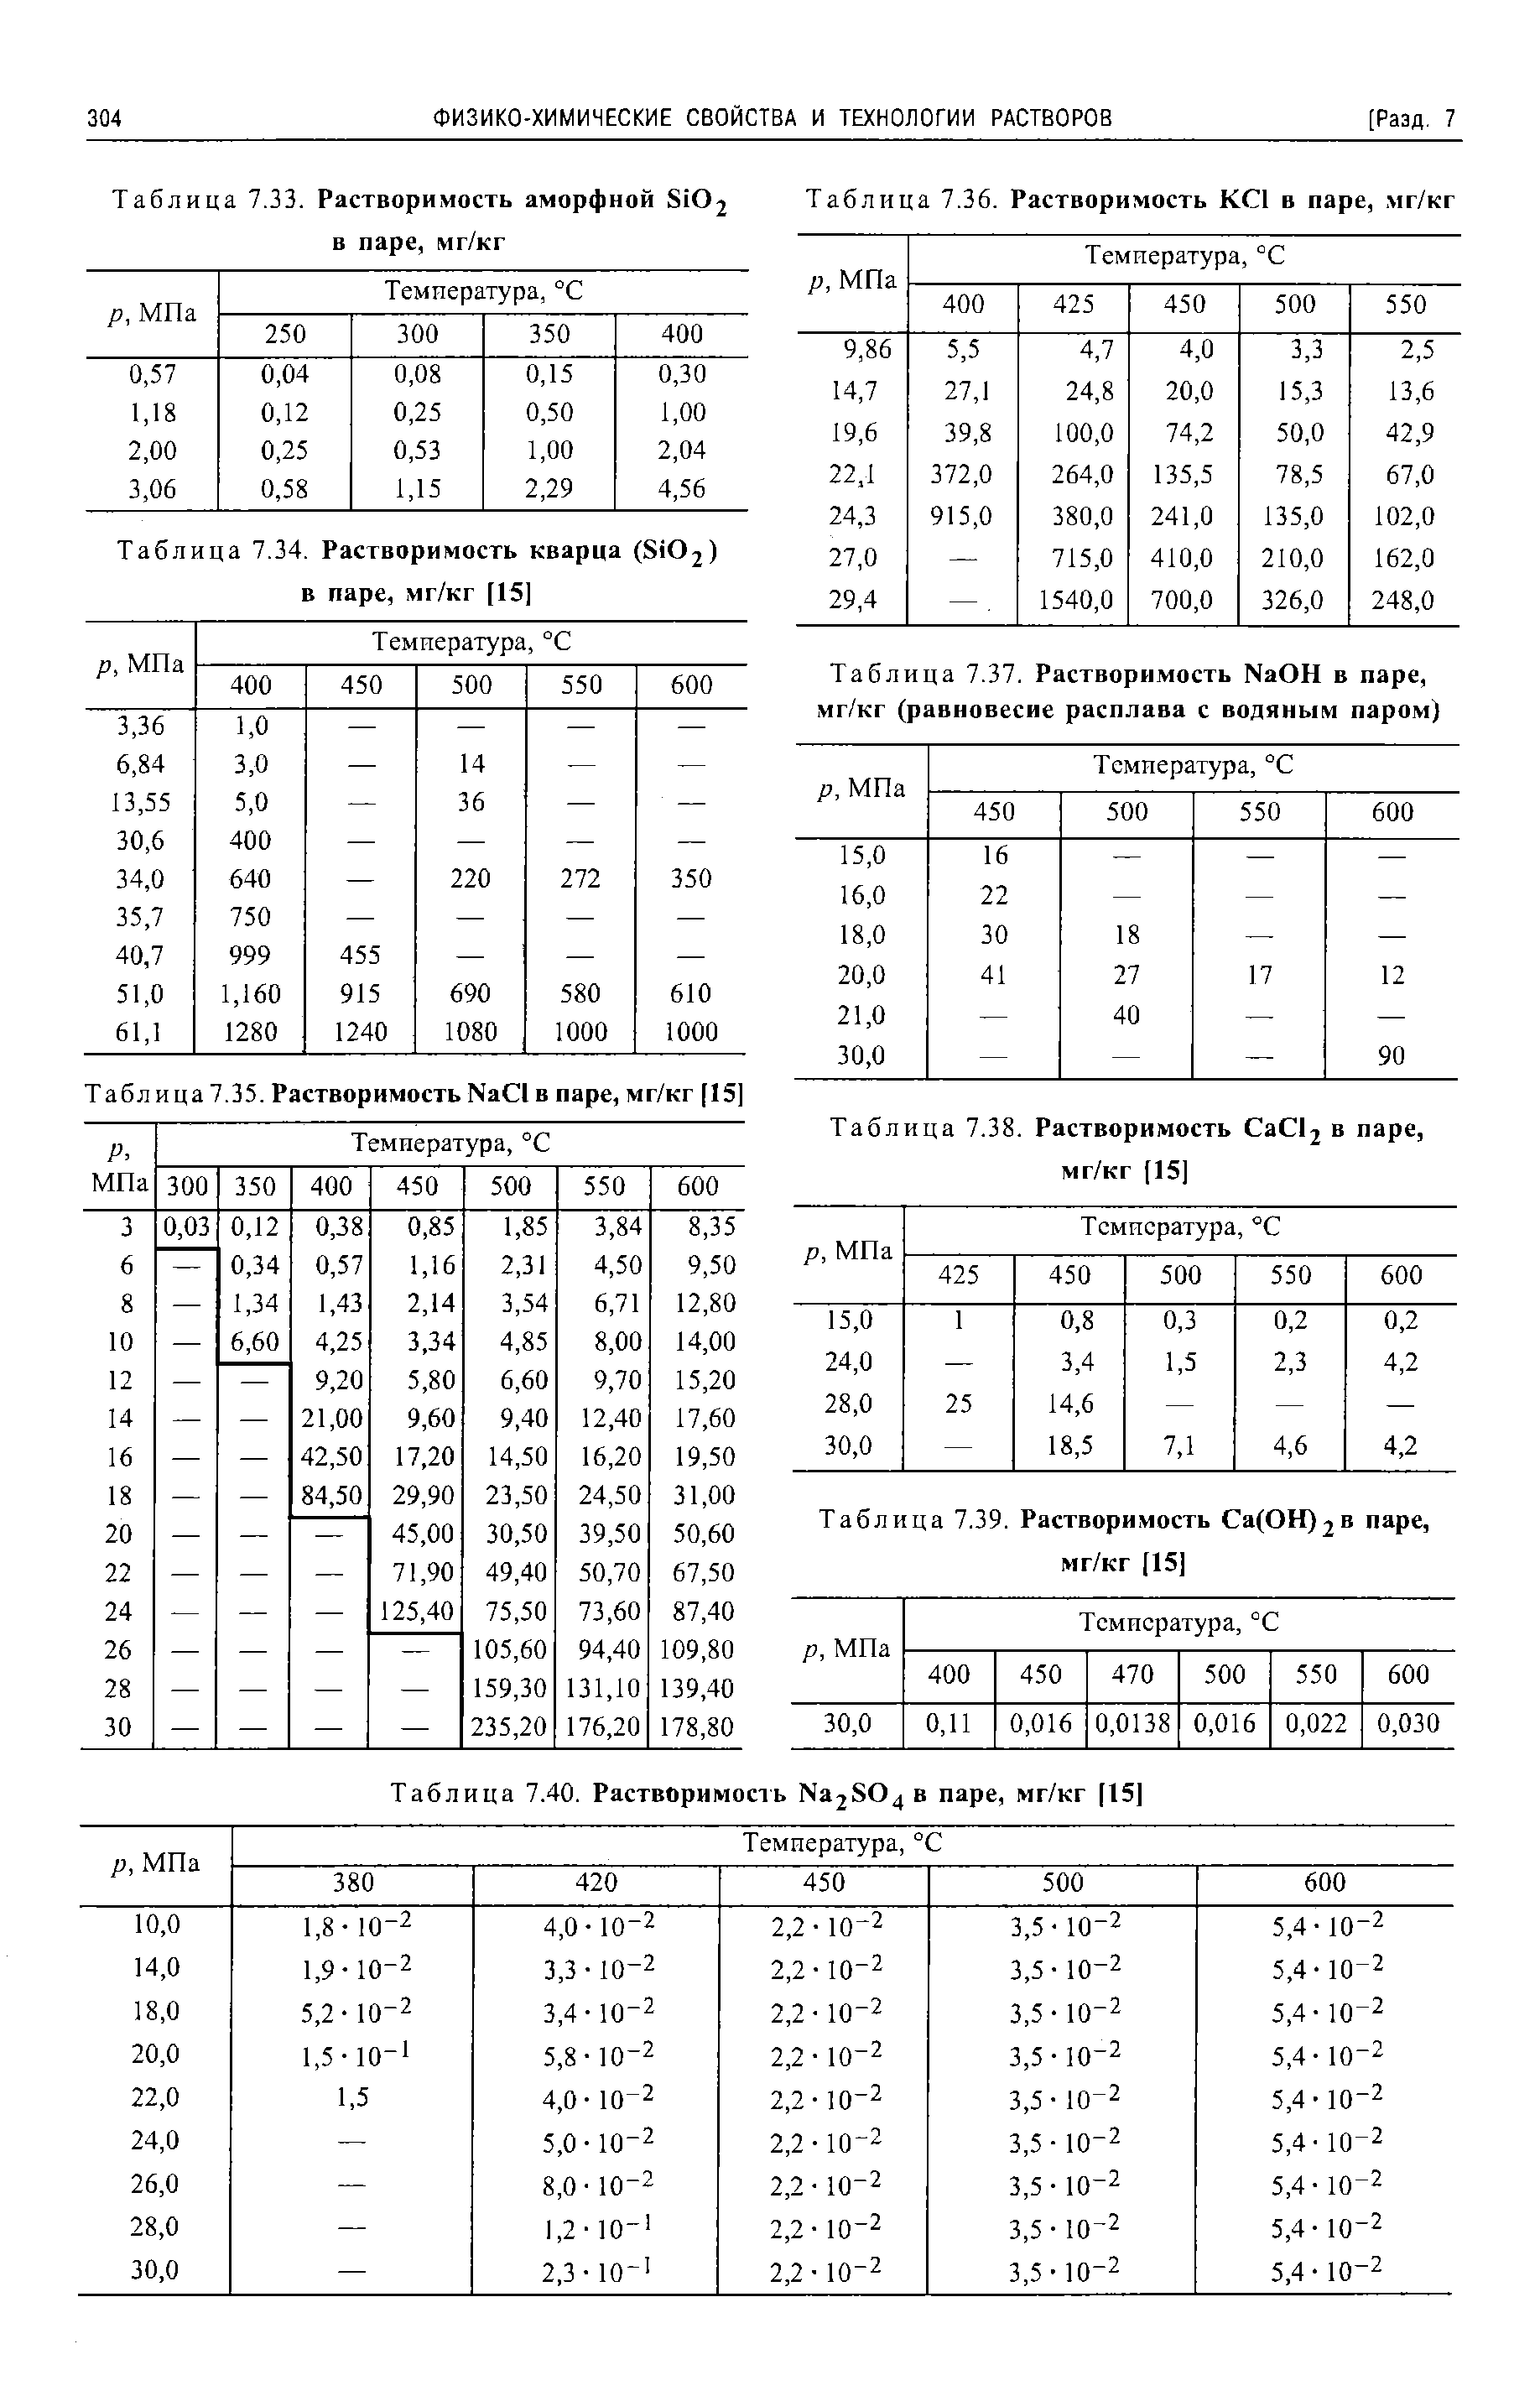 Таблица 7.37. Растворимость NaOH в паре, мг/кг (равновесие расплава с водяным паром)
